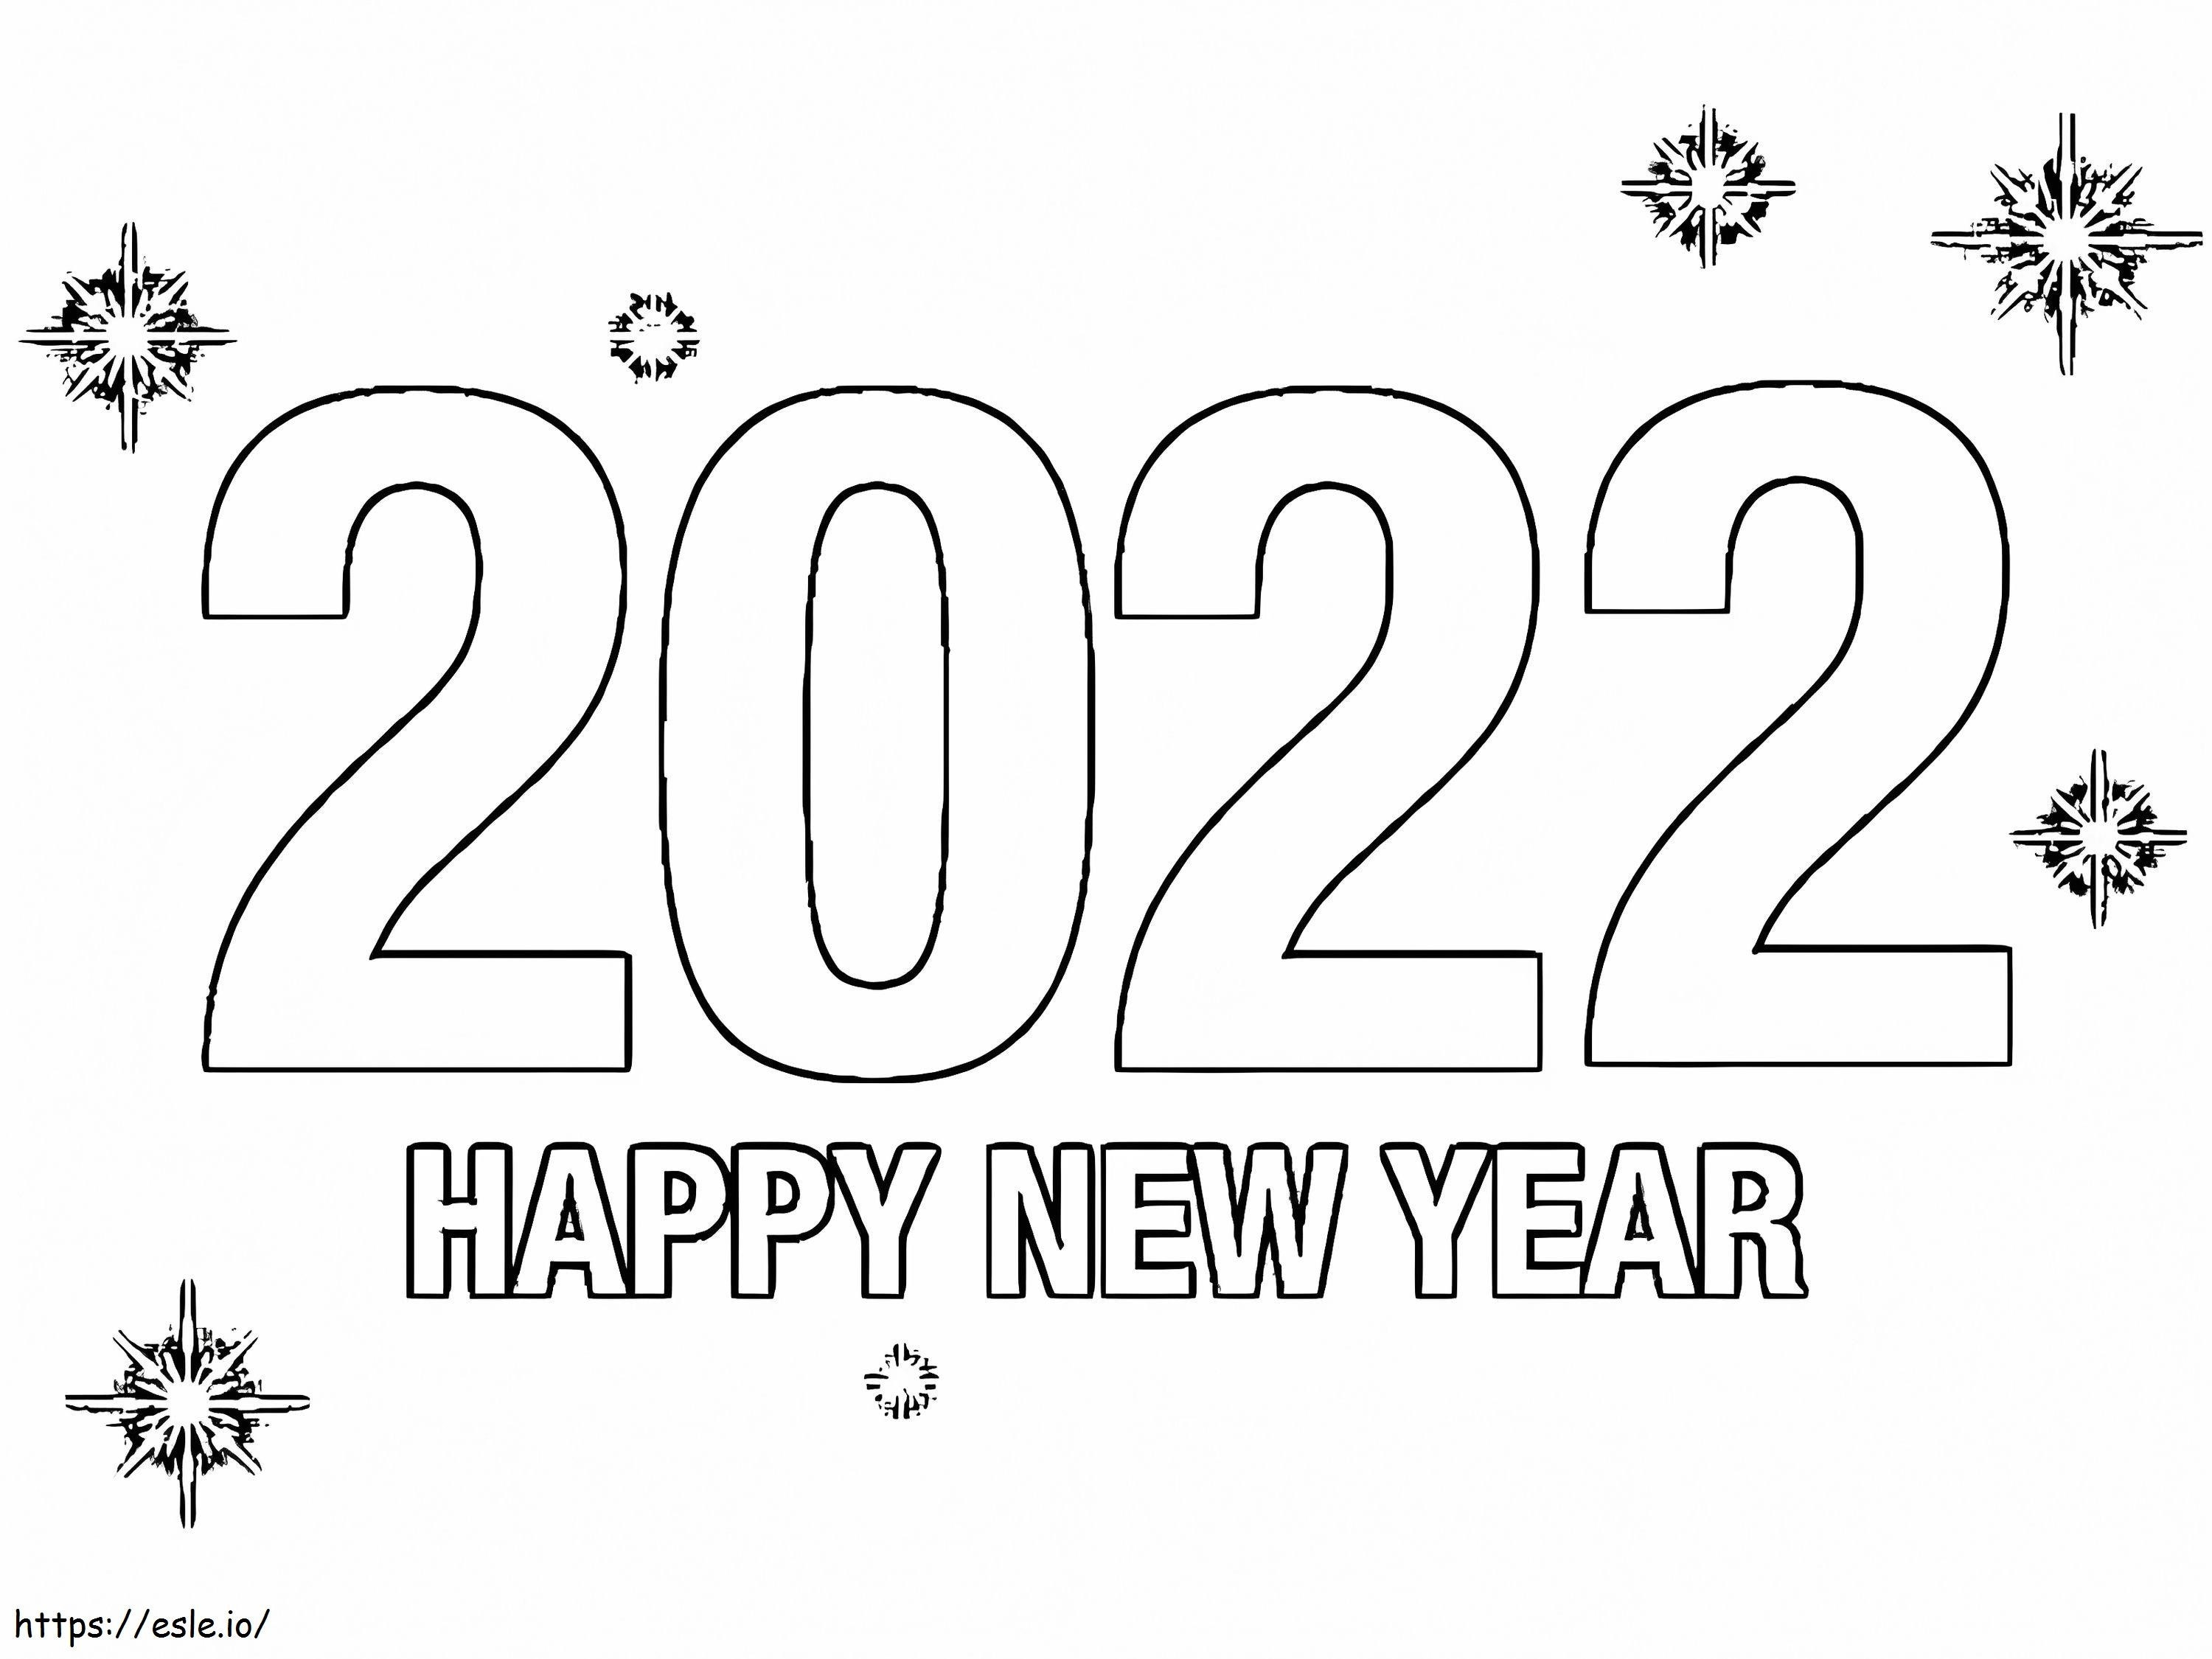 Feliz Ano Novo 2022 grátis para colorir